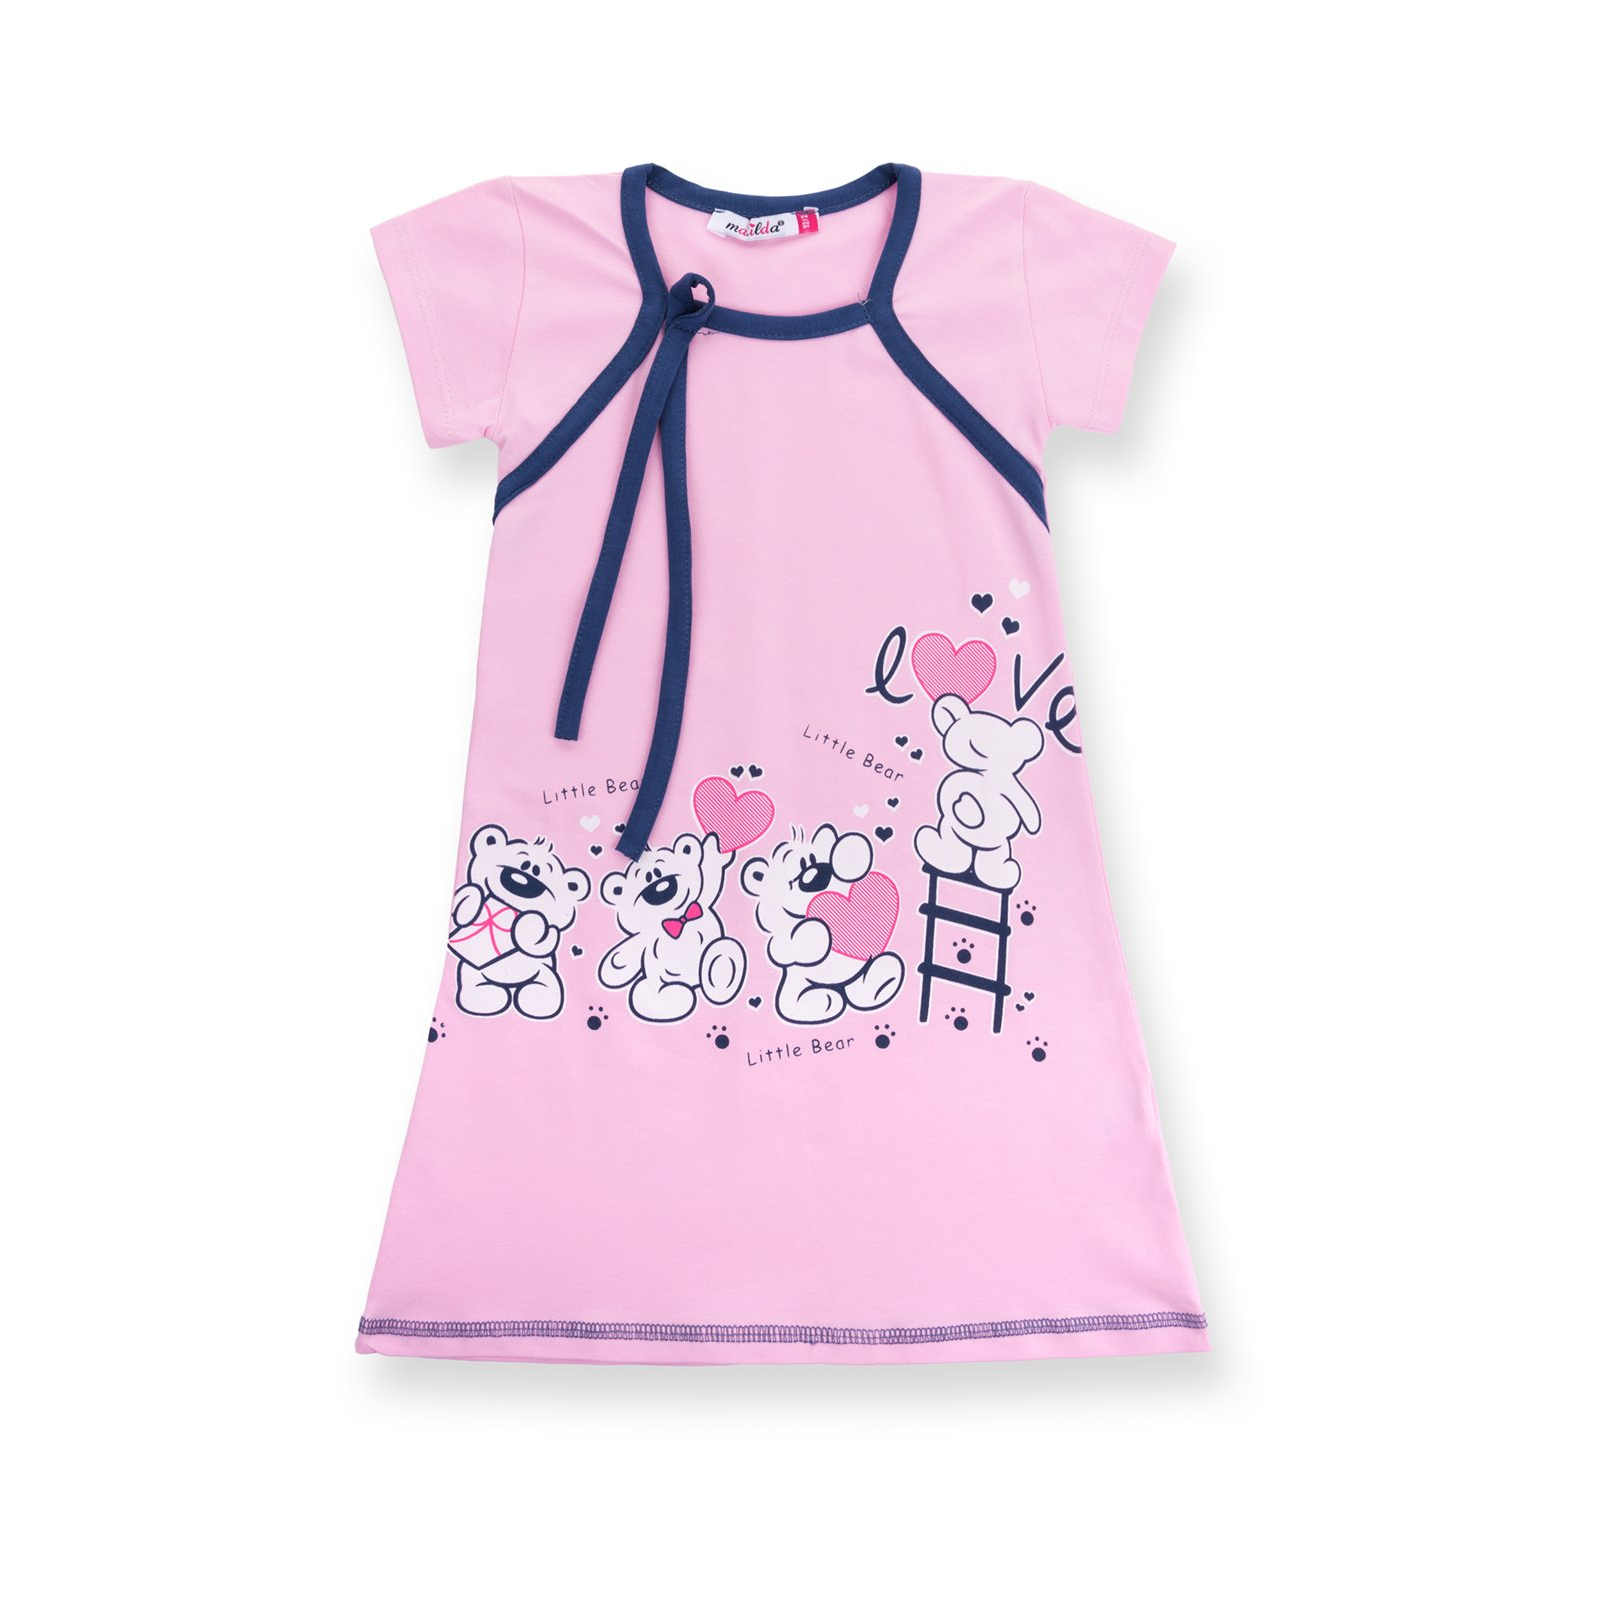 Пижама Matilda и халат с мишками "Love" (7445-98G-pink) изображение 3